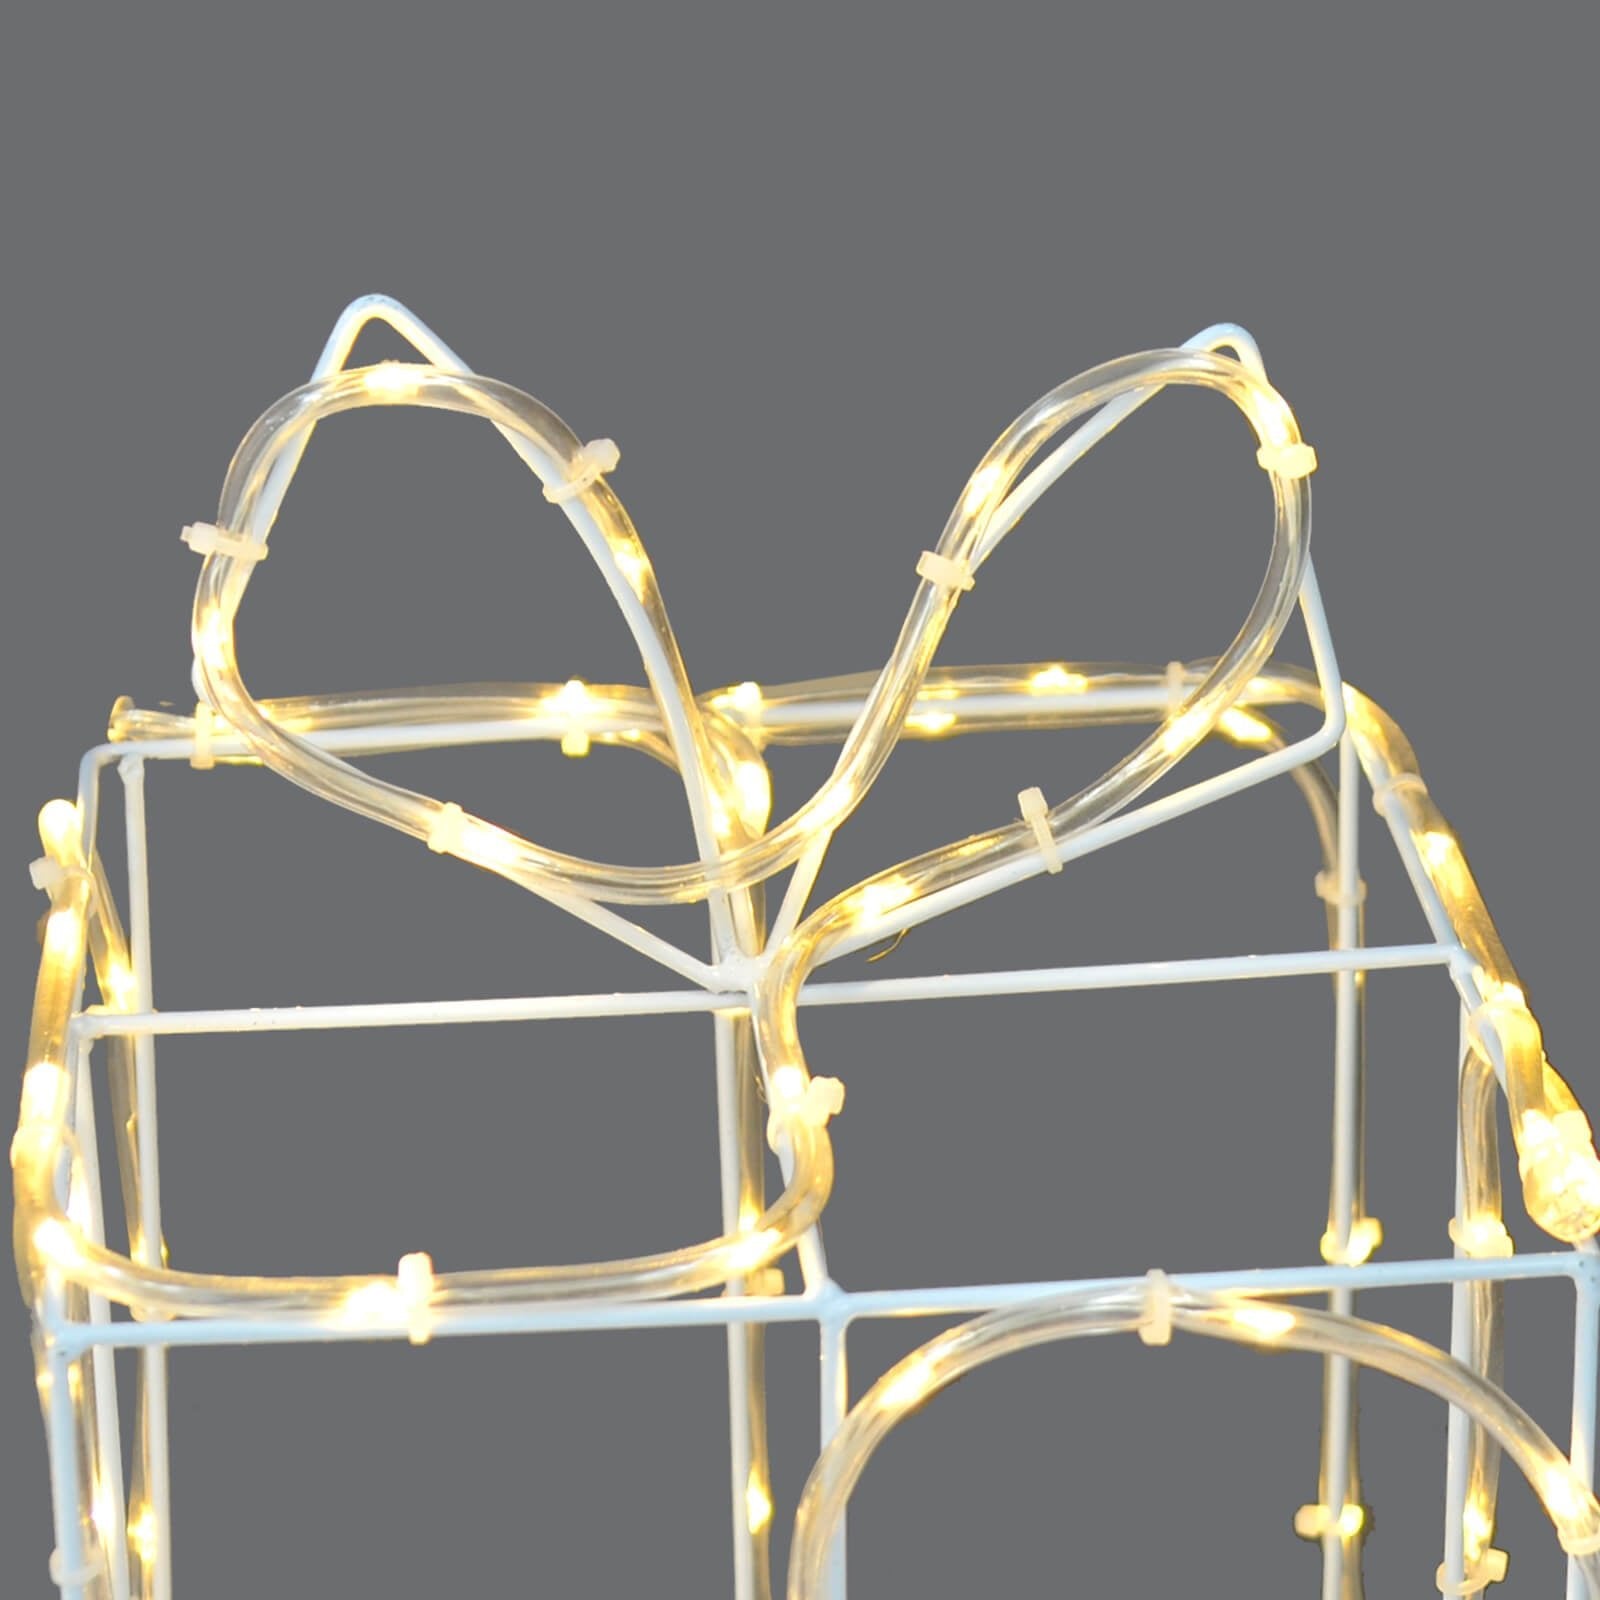 Mr Crimbo Set of 3 LED Gift Boxes Christmas Rope Light Decoration - MrCrimbo.co.uk -XS7571 - -